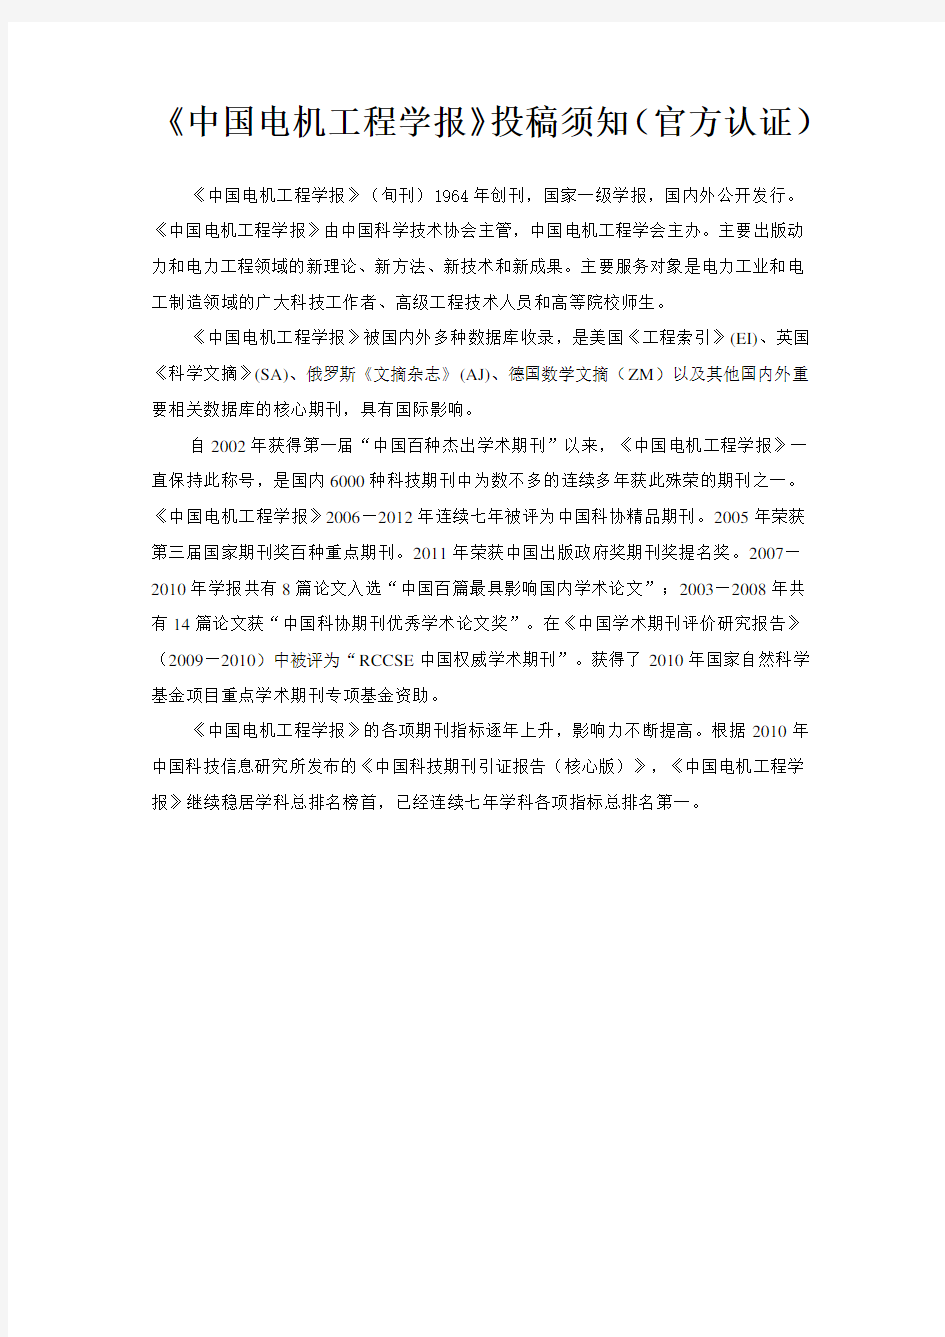 《中国电机工程学报》投稿须知(官方认证)